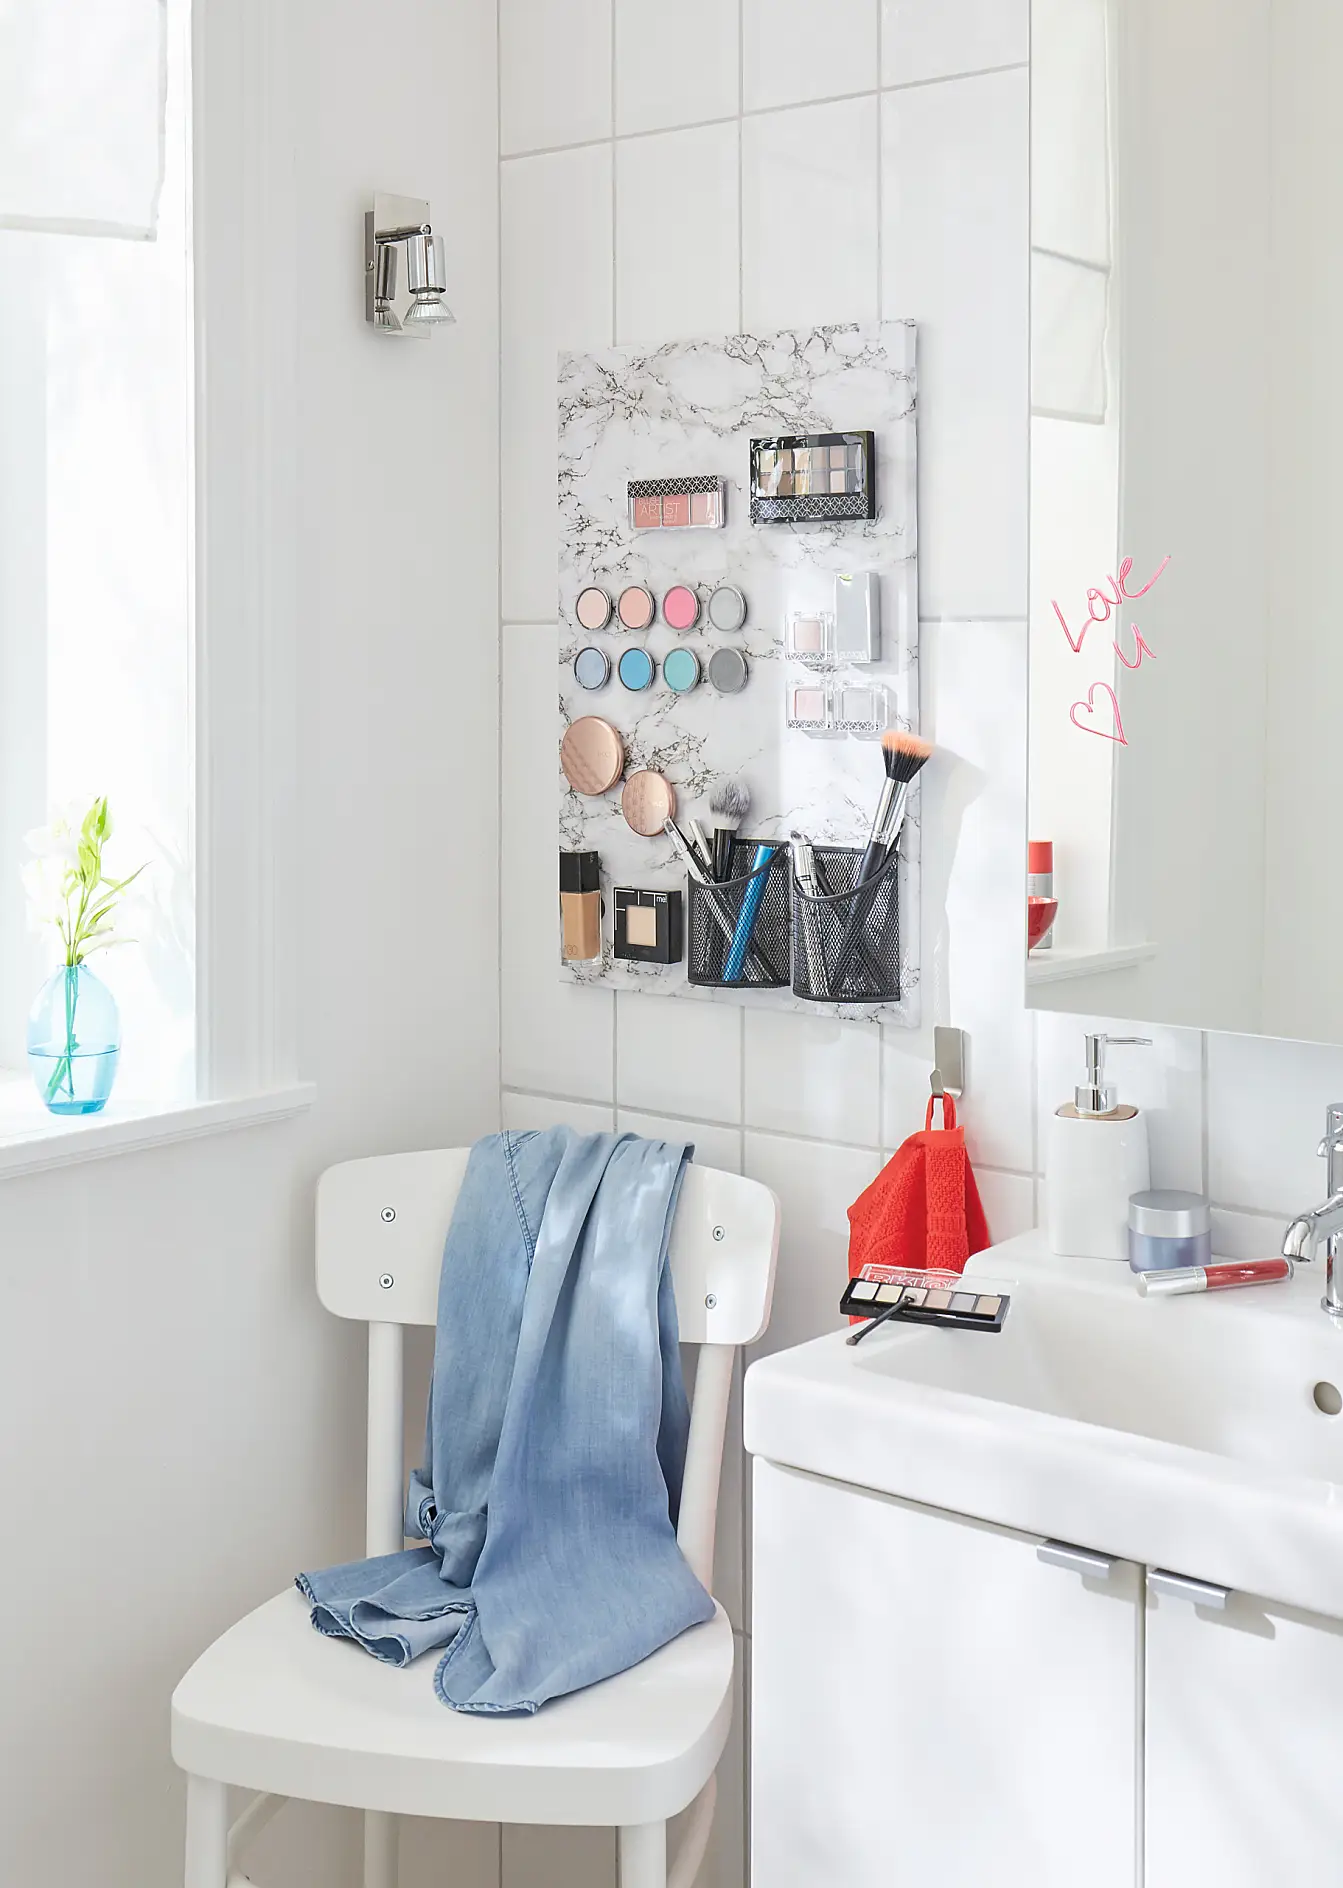 好好欣赏您自己制作的浴室化妆品磁铁墙吧!